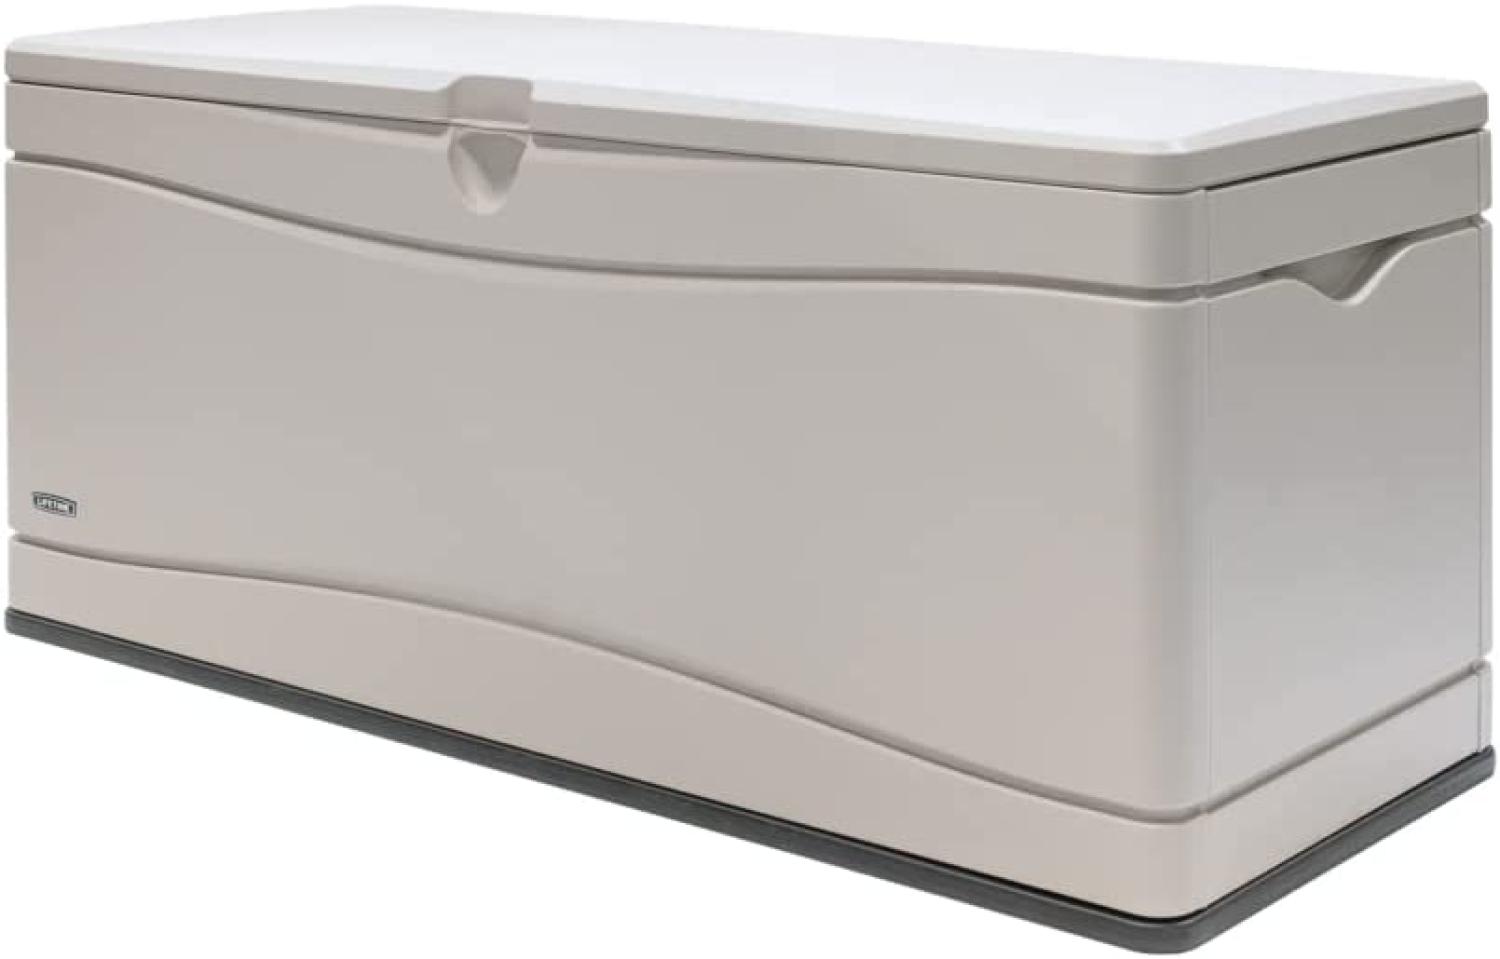 Lifetime Kunststoff Kissen Aufbewahrungsbox 495 Liter | Lichtgrau | 61x152,5x67 cm Bild 1